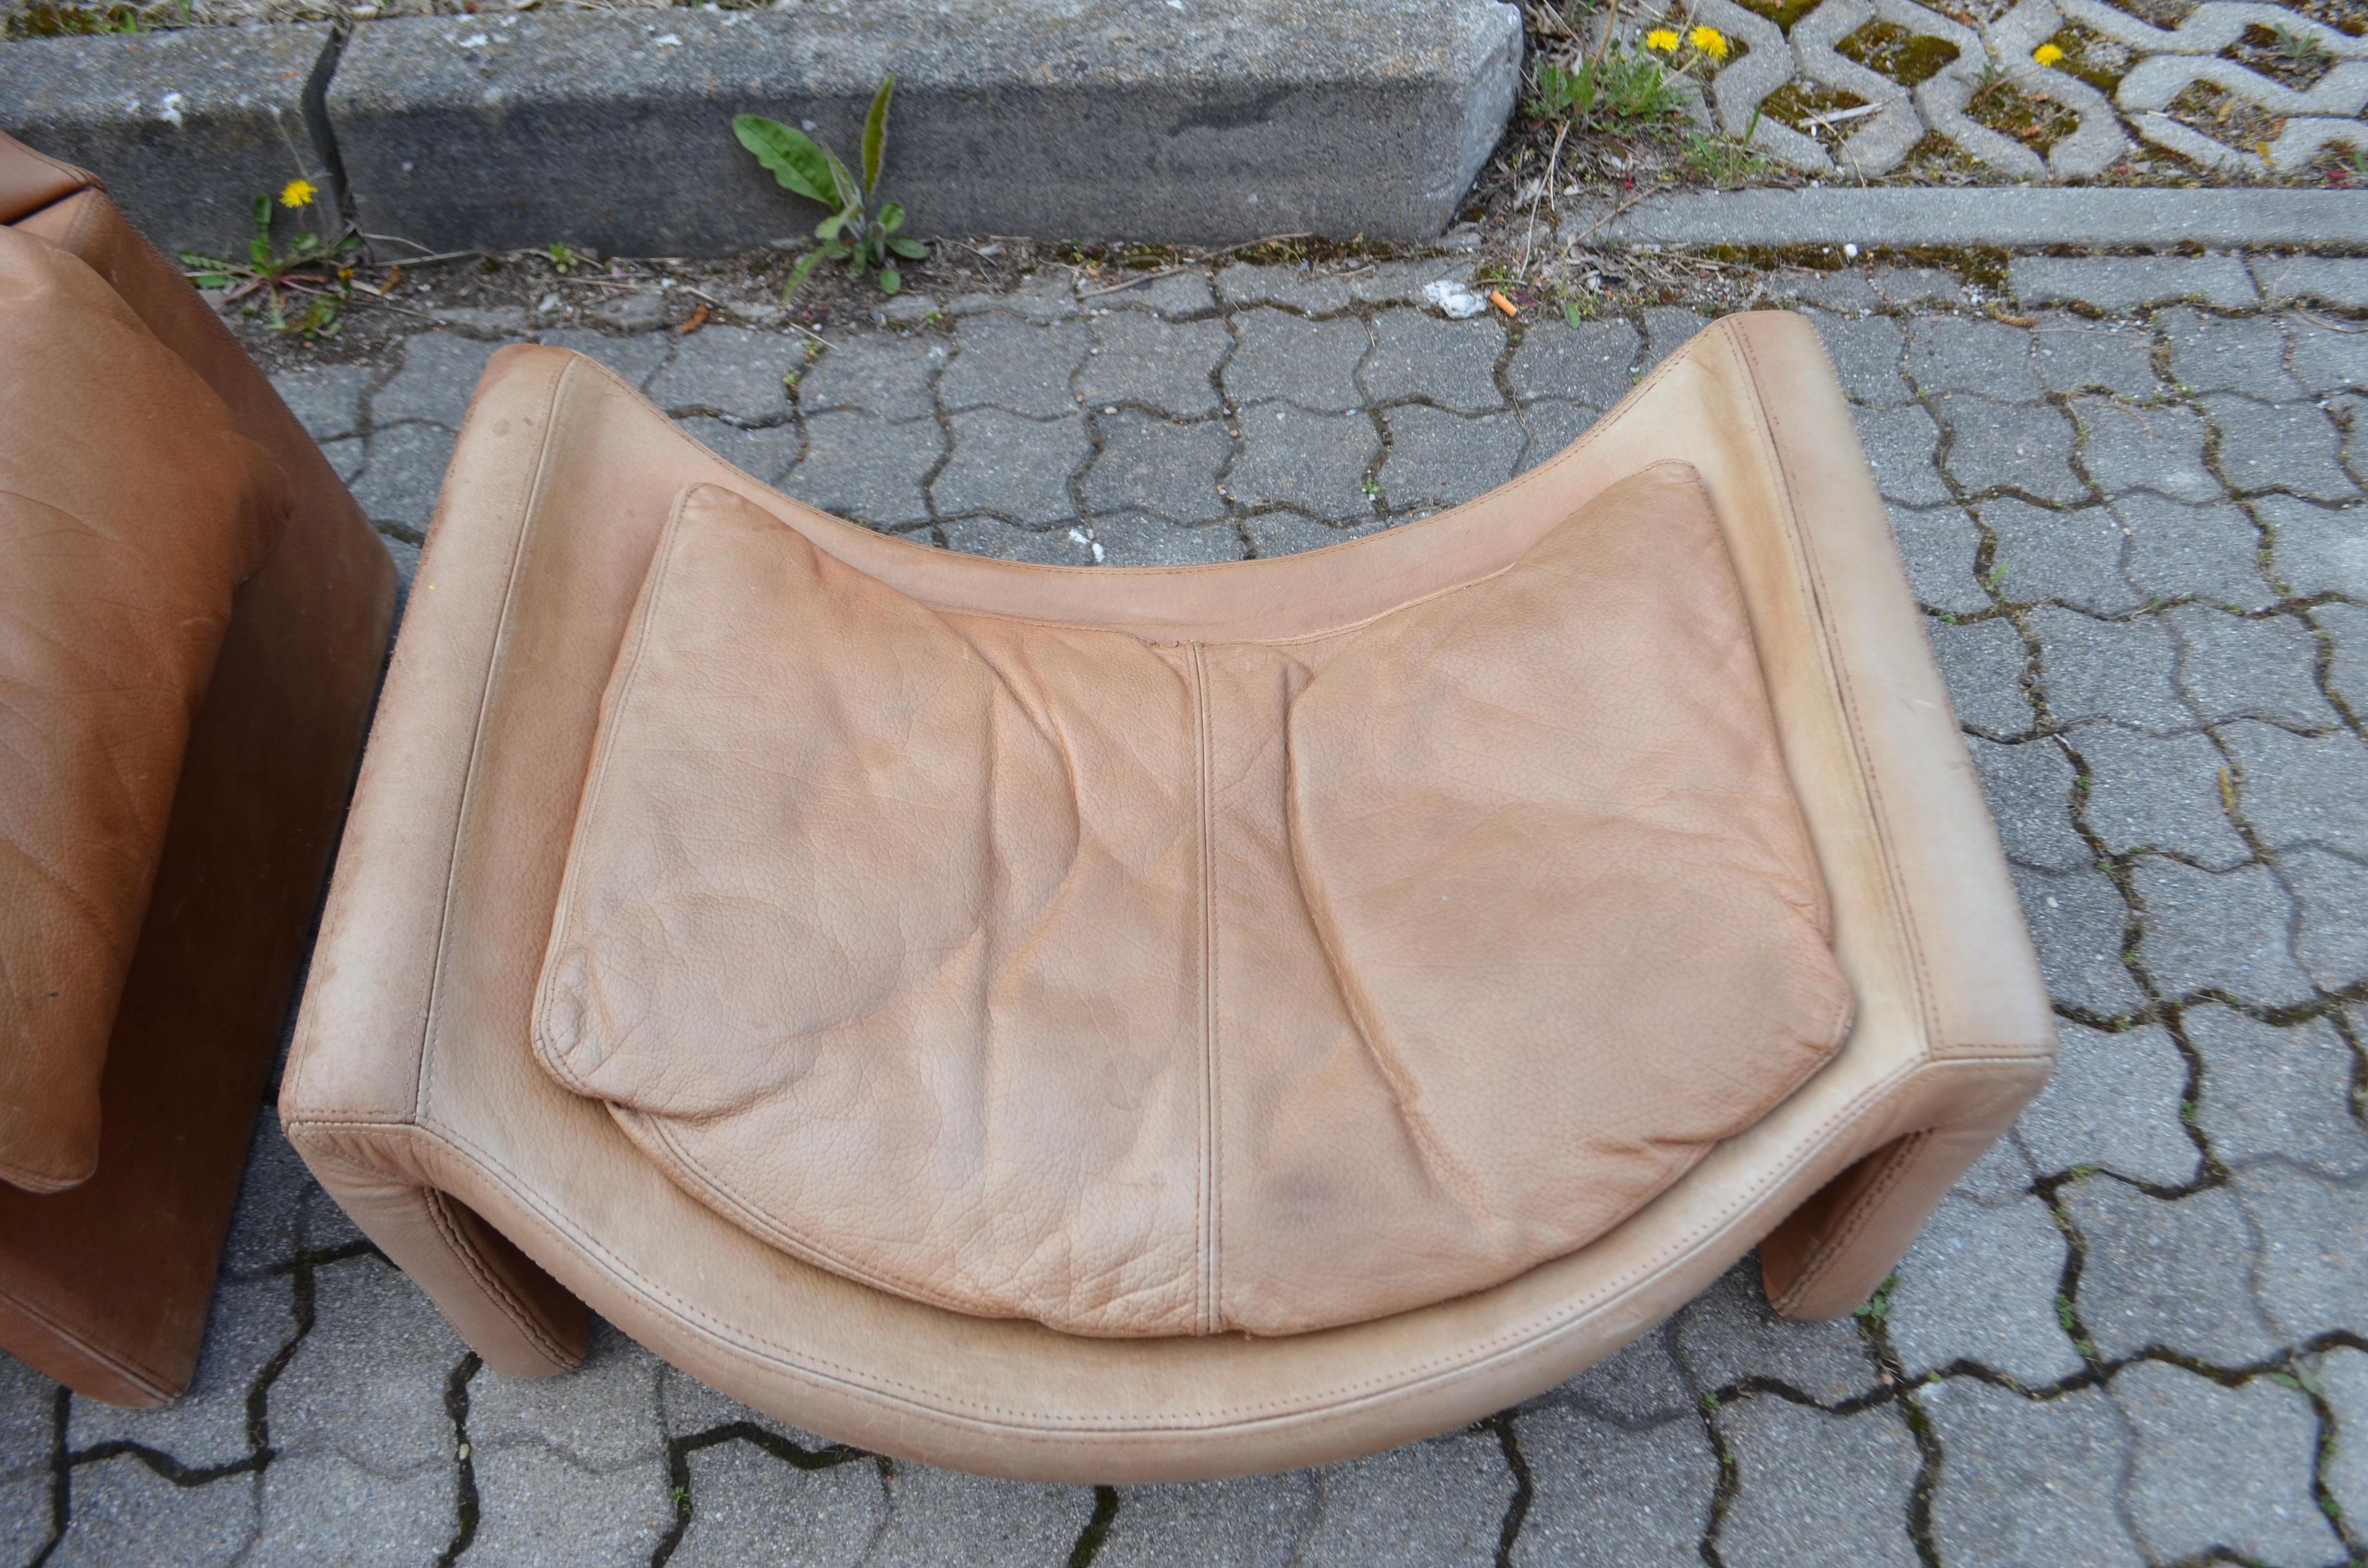 Saporiti Italia Vittorio Introini P60 Lounge Chair and Ottoman Proposals In Good Condition In Munich, Bavaria